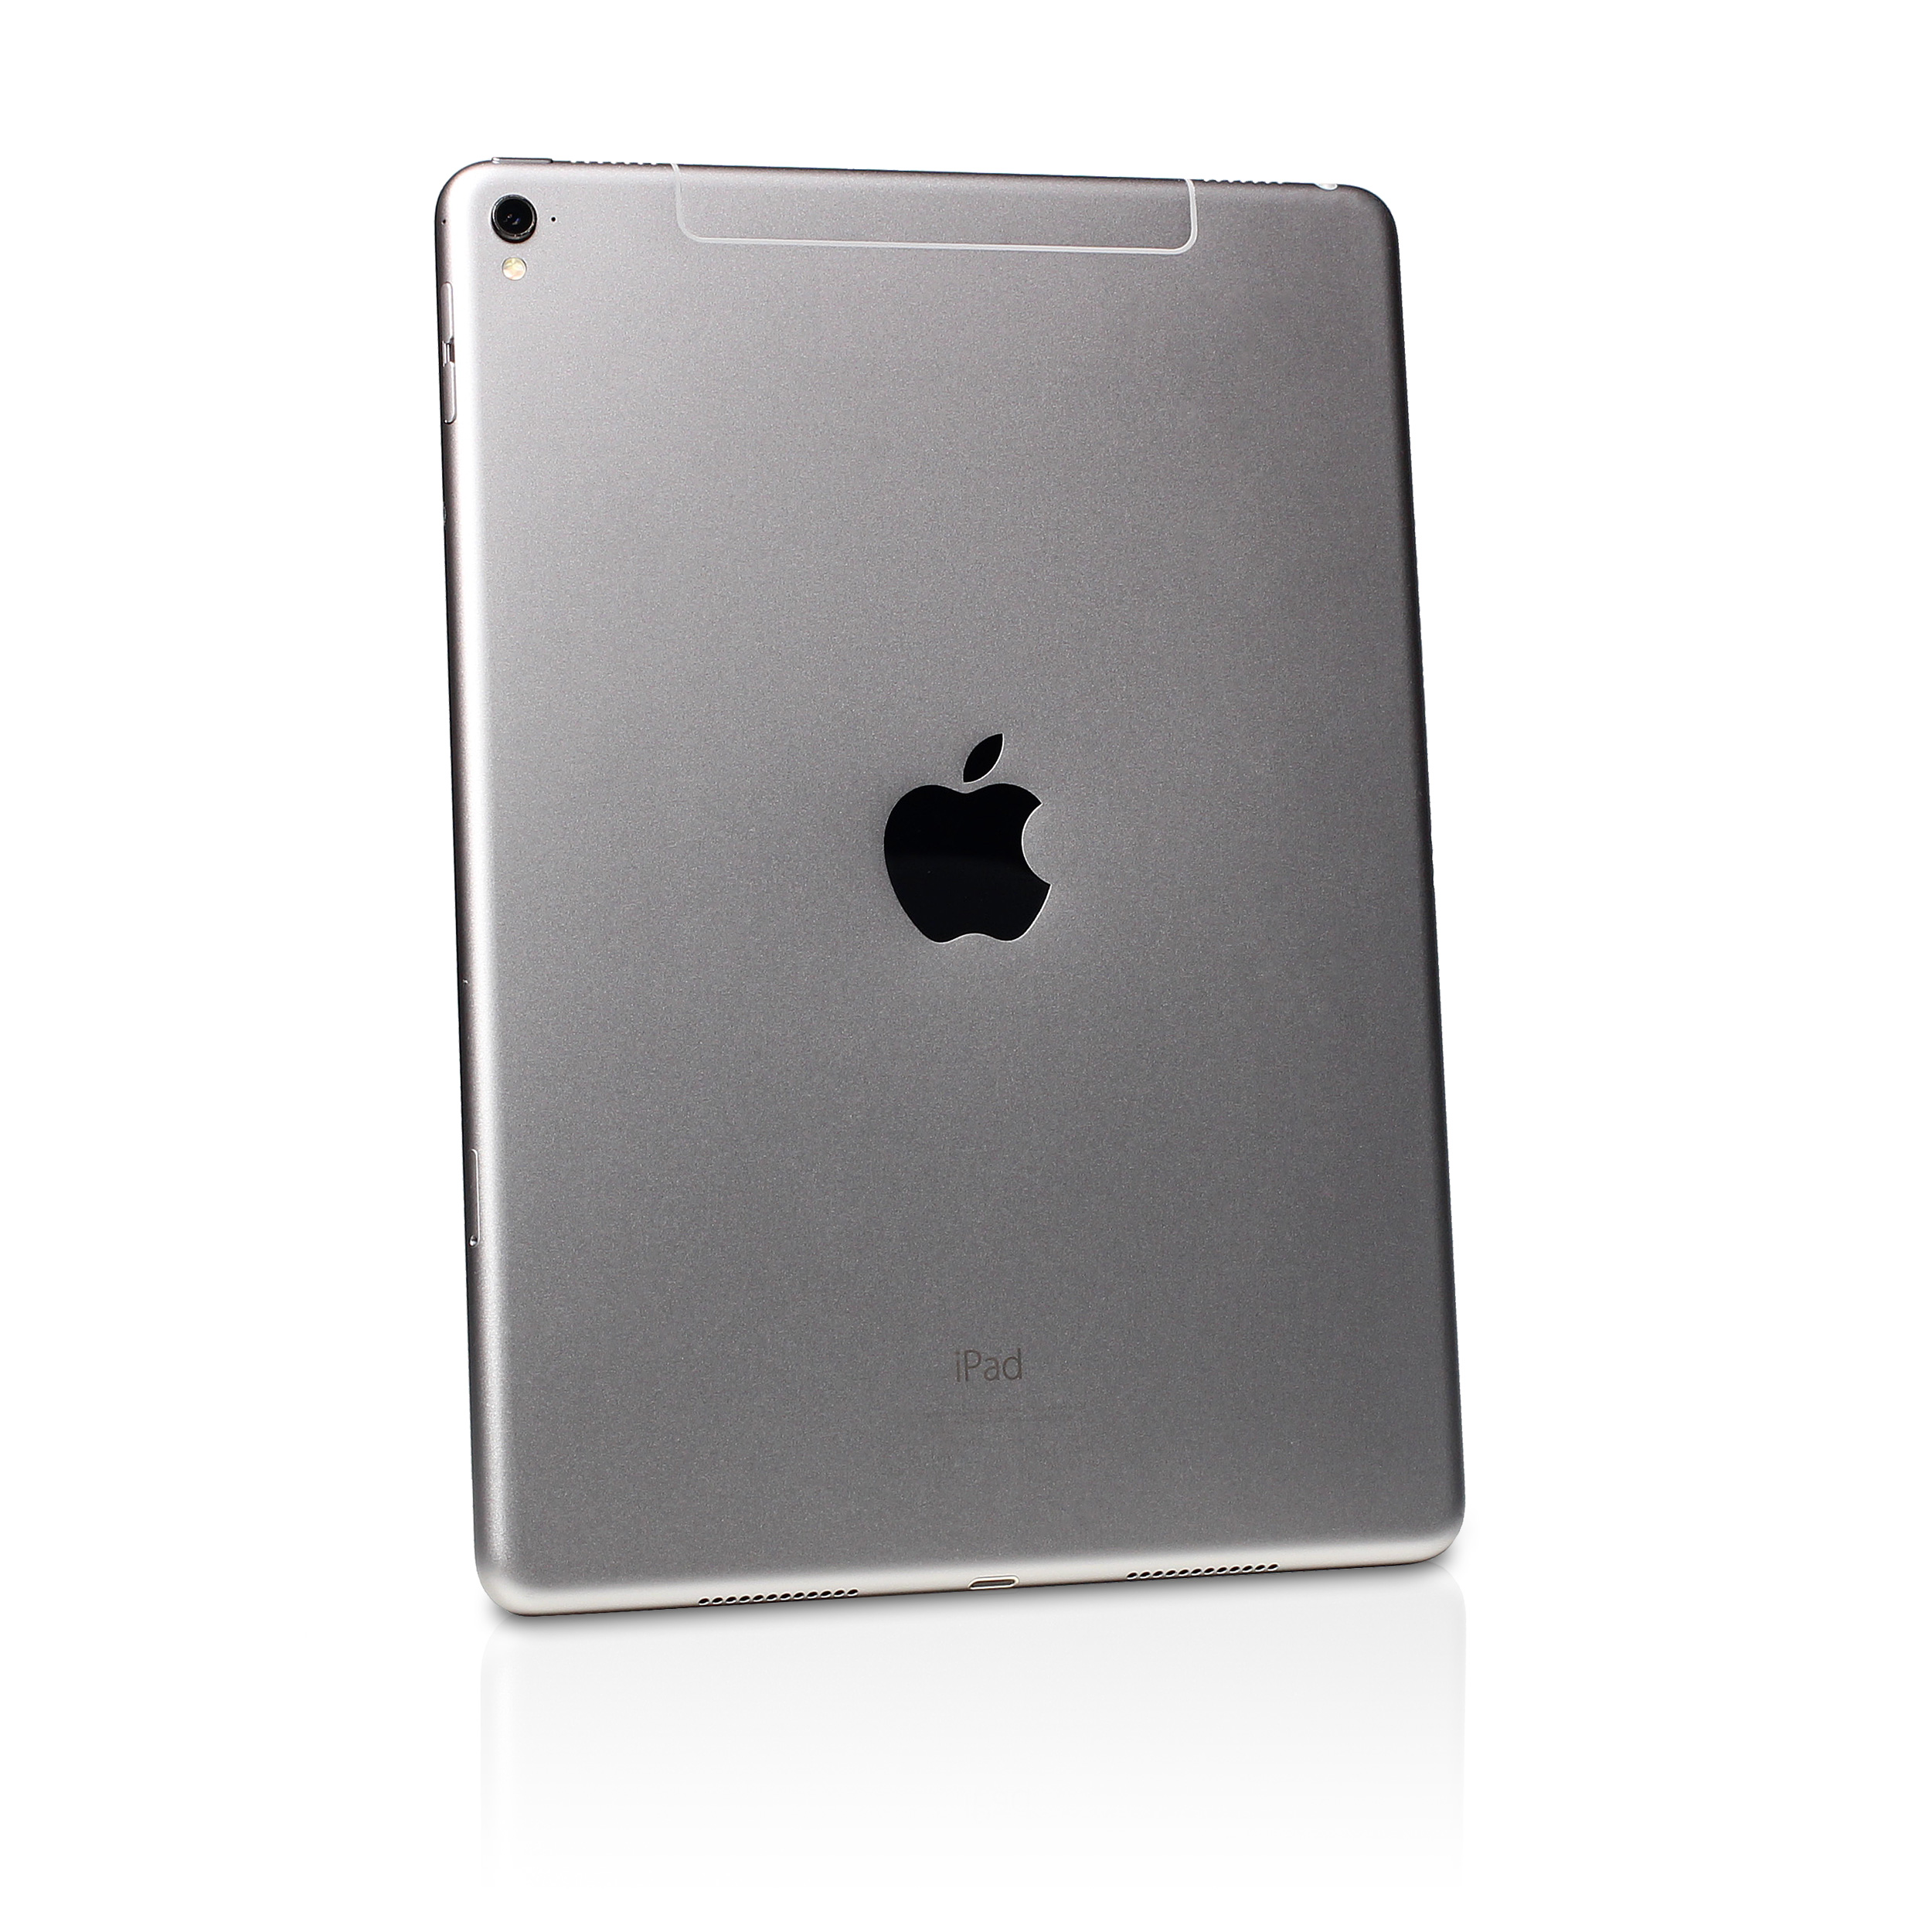 Apple, Inc. - iPad Pro 9.7-inch Wi-Fi 32GB Space Gray